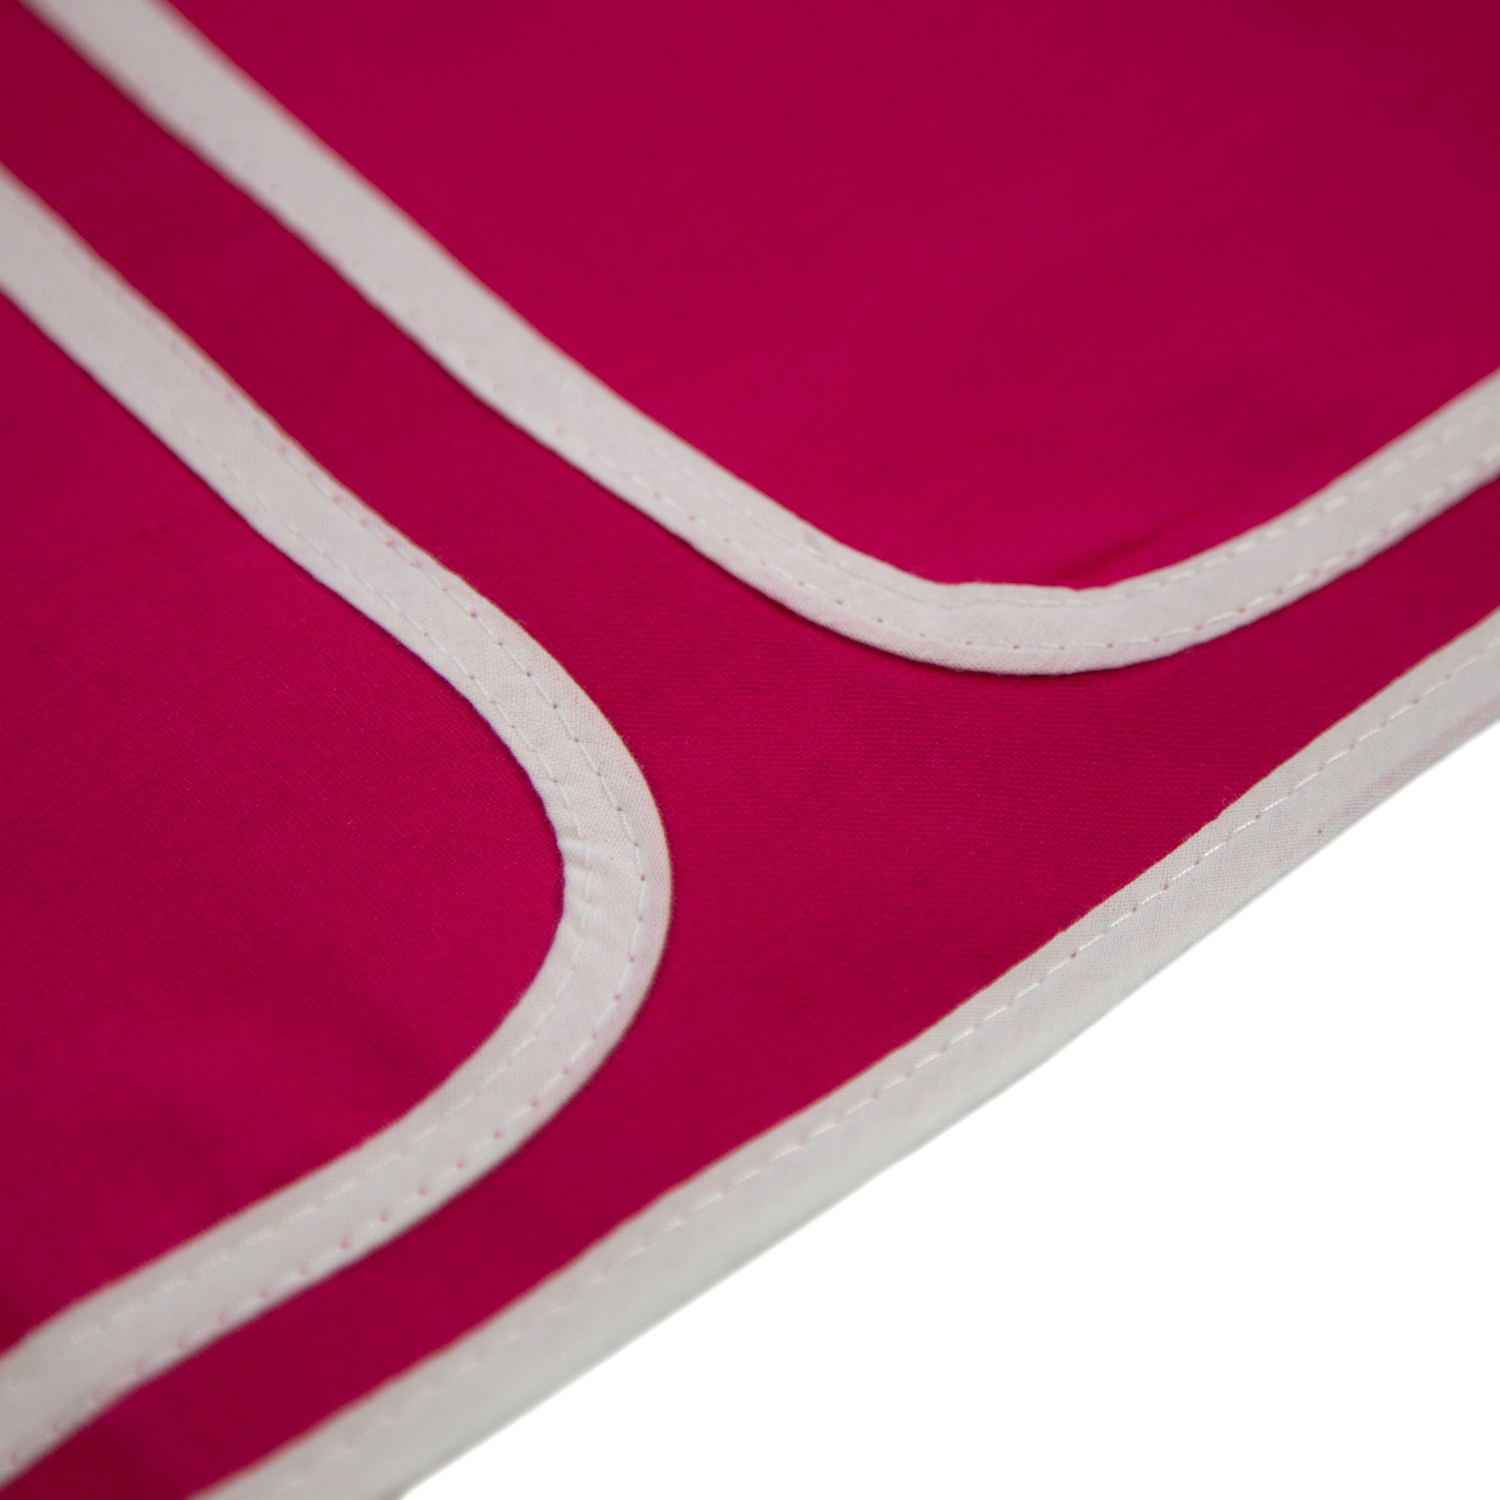 Betttasche Stofftasche für Hochbetten Tasche Kinderbett Pink Rot Baumwolle